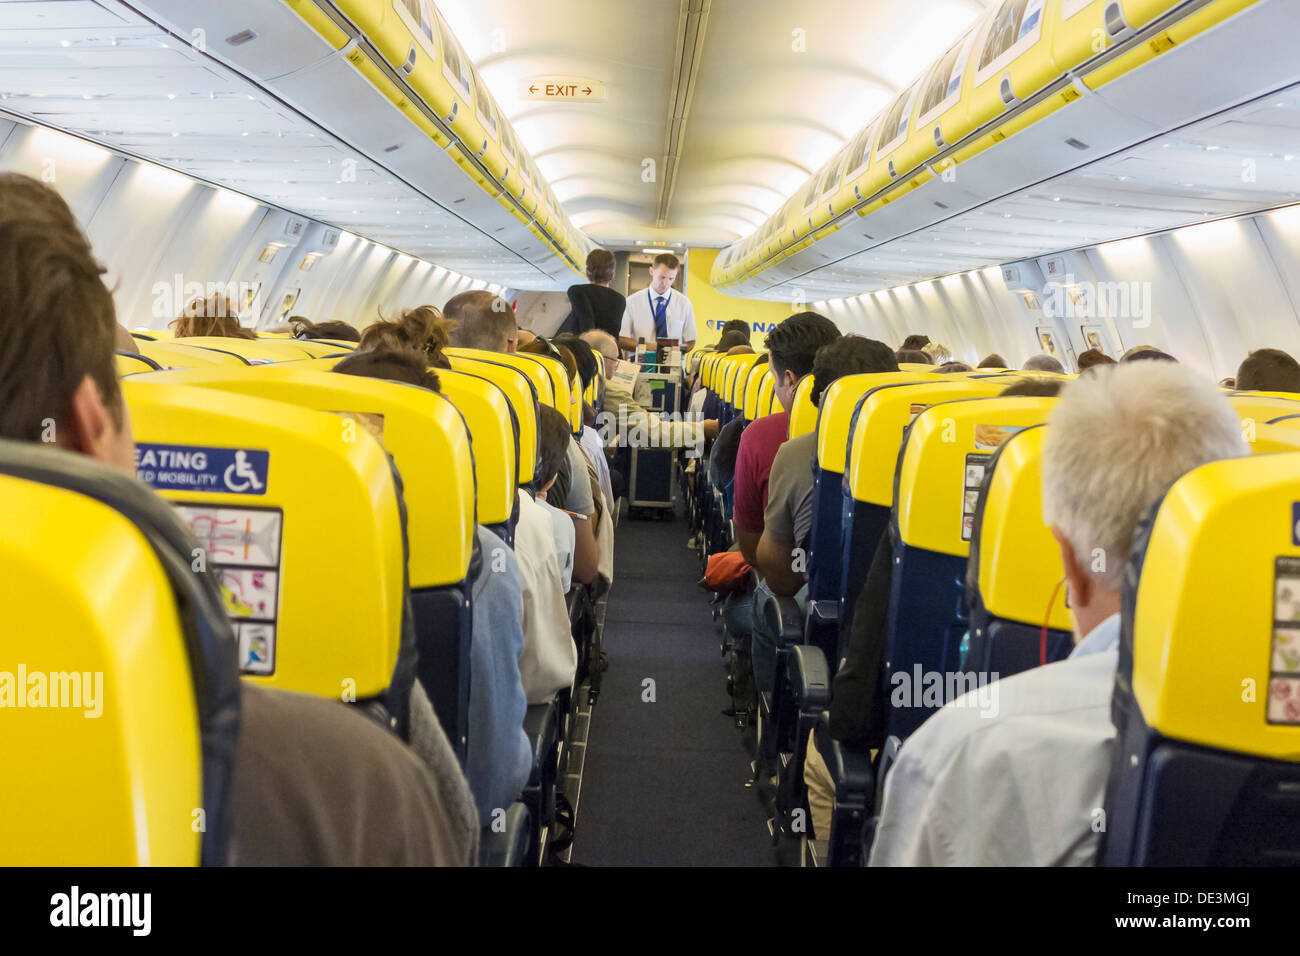 Intérieur d'avion de Ryanair avec de l'air steward Banque D'Images